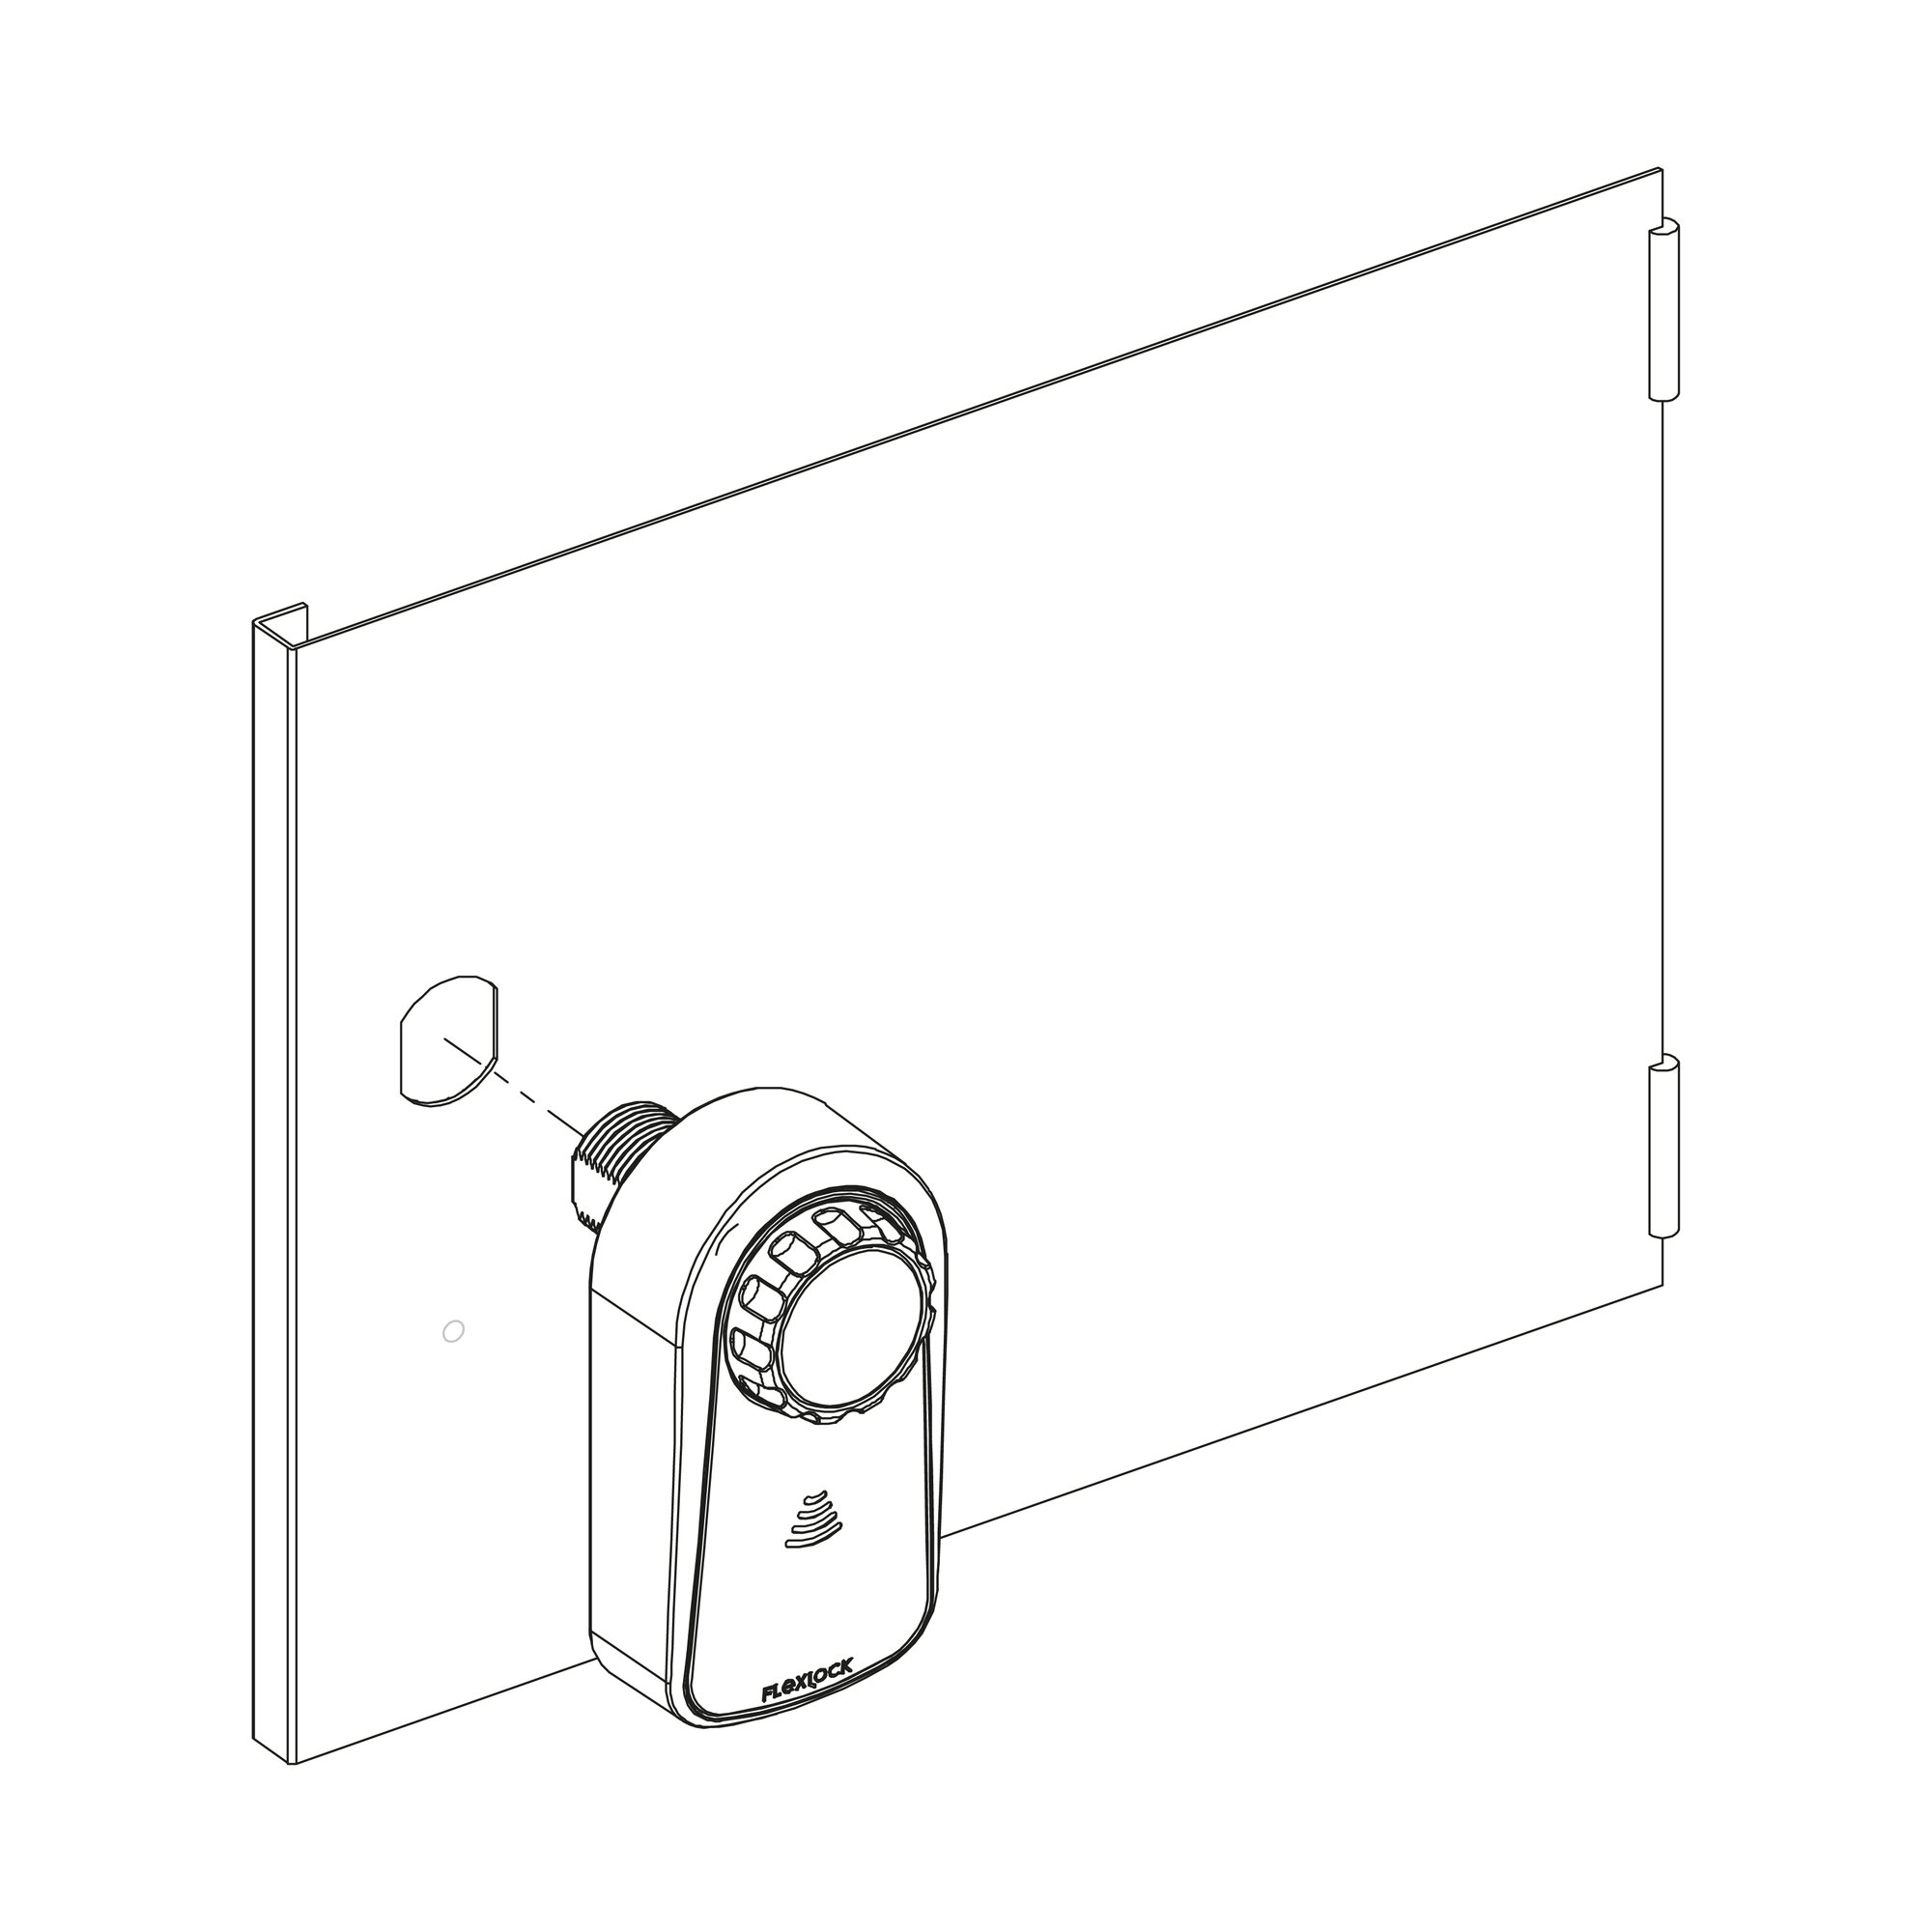 Diagram of how to install Flexlock Visible lock on cabinet door